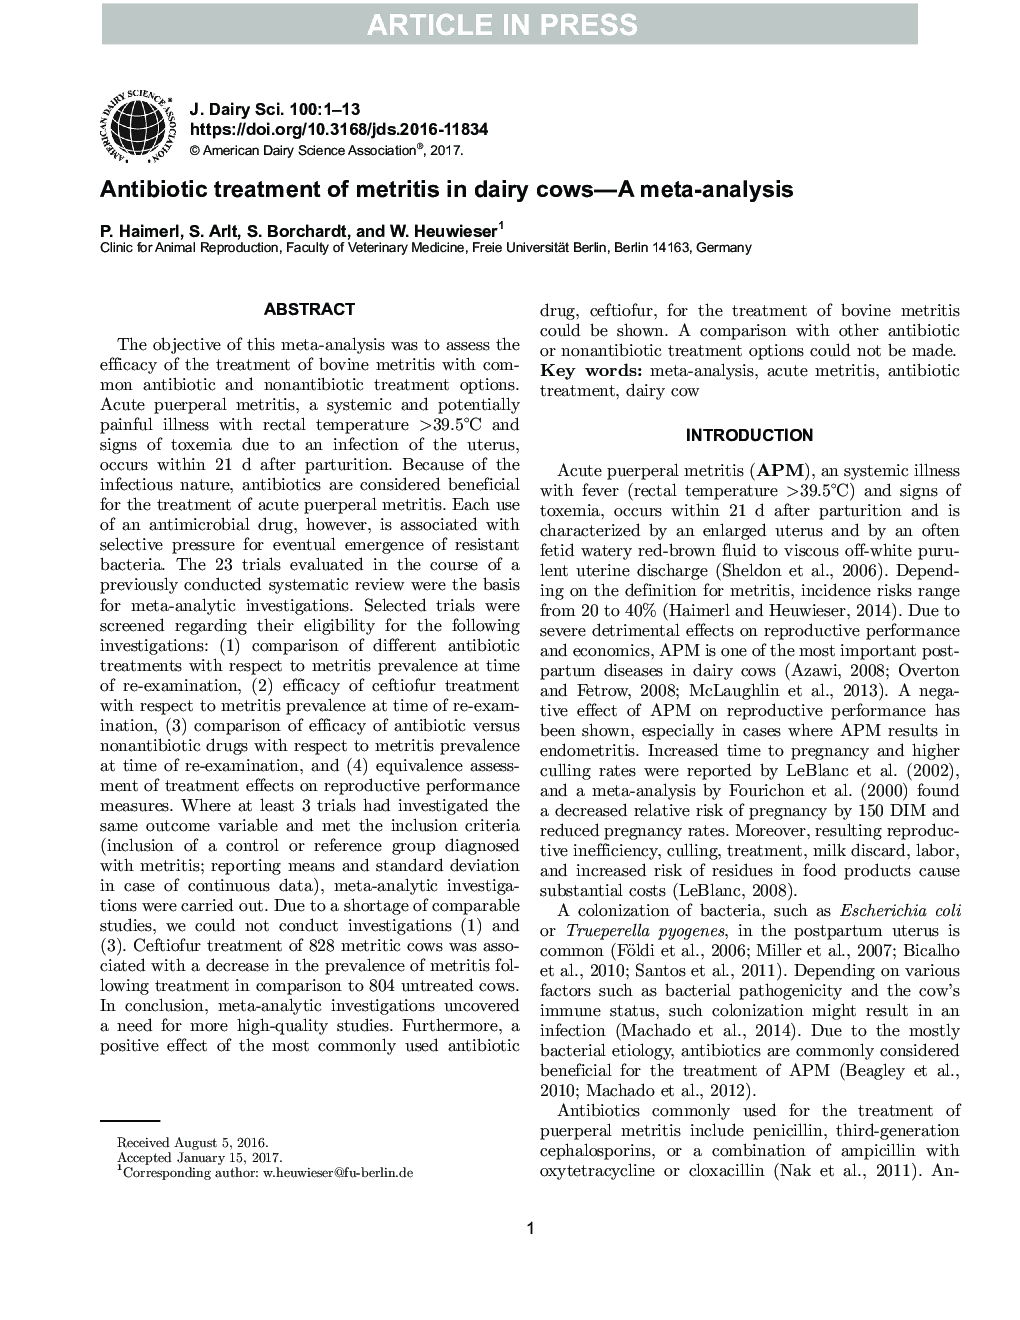 درمان آنتی بیوتیک متتریت در گاوهای شیری - یک متاآنالیز 